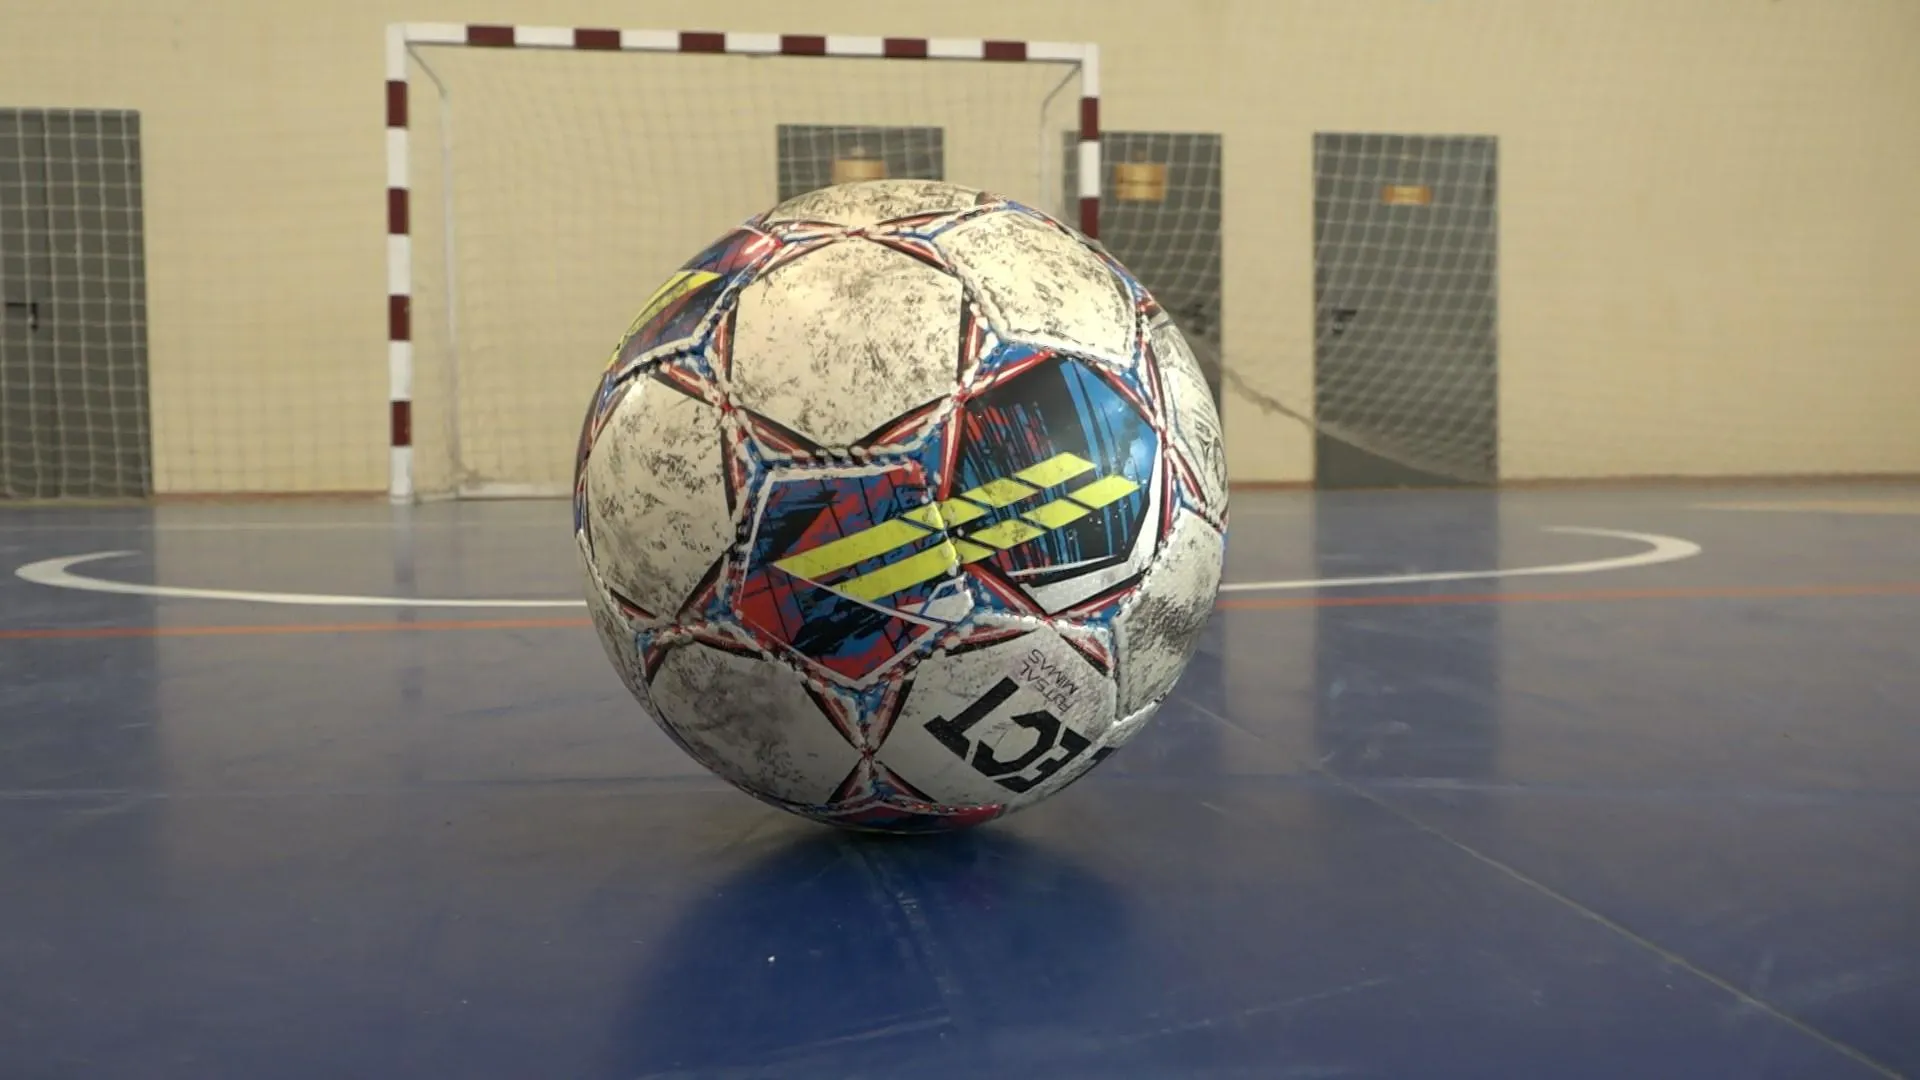 360 soccer